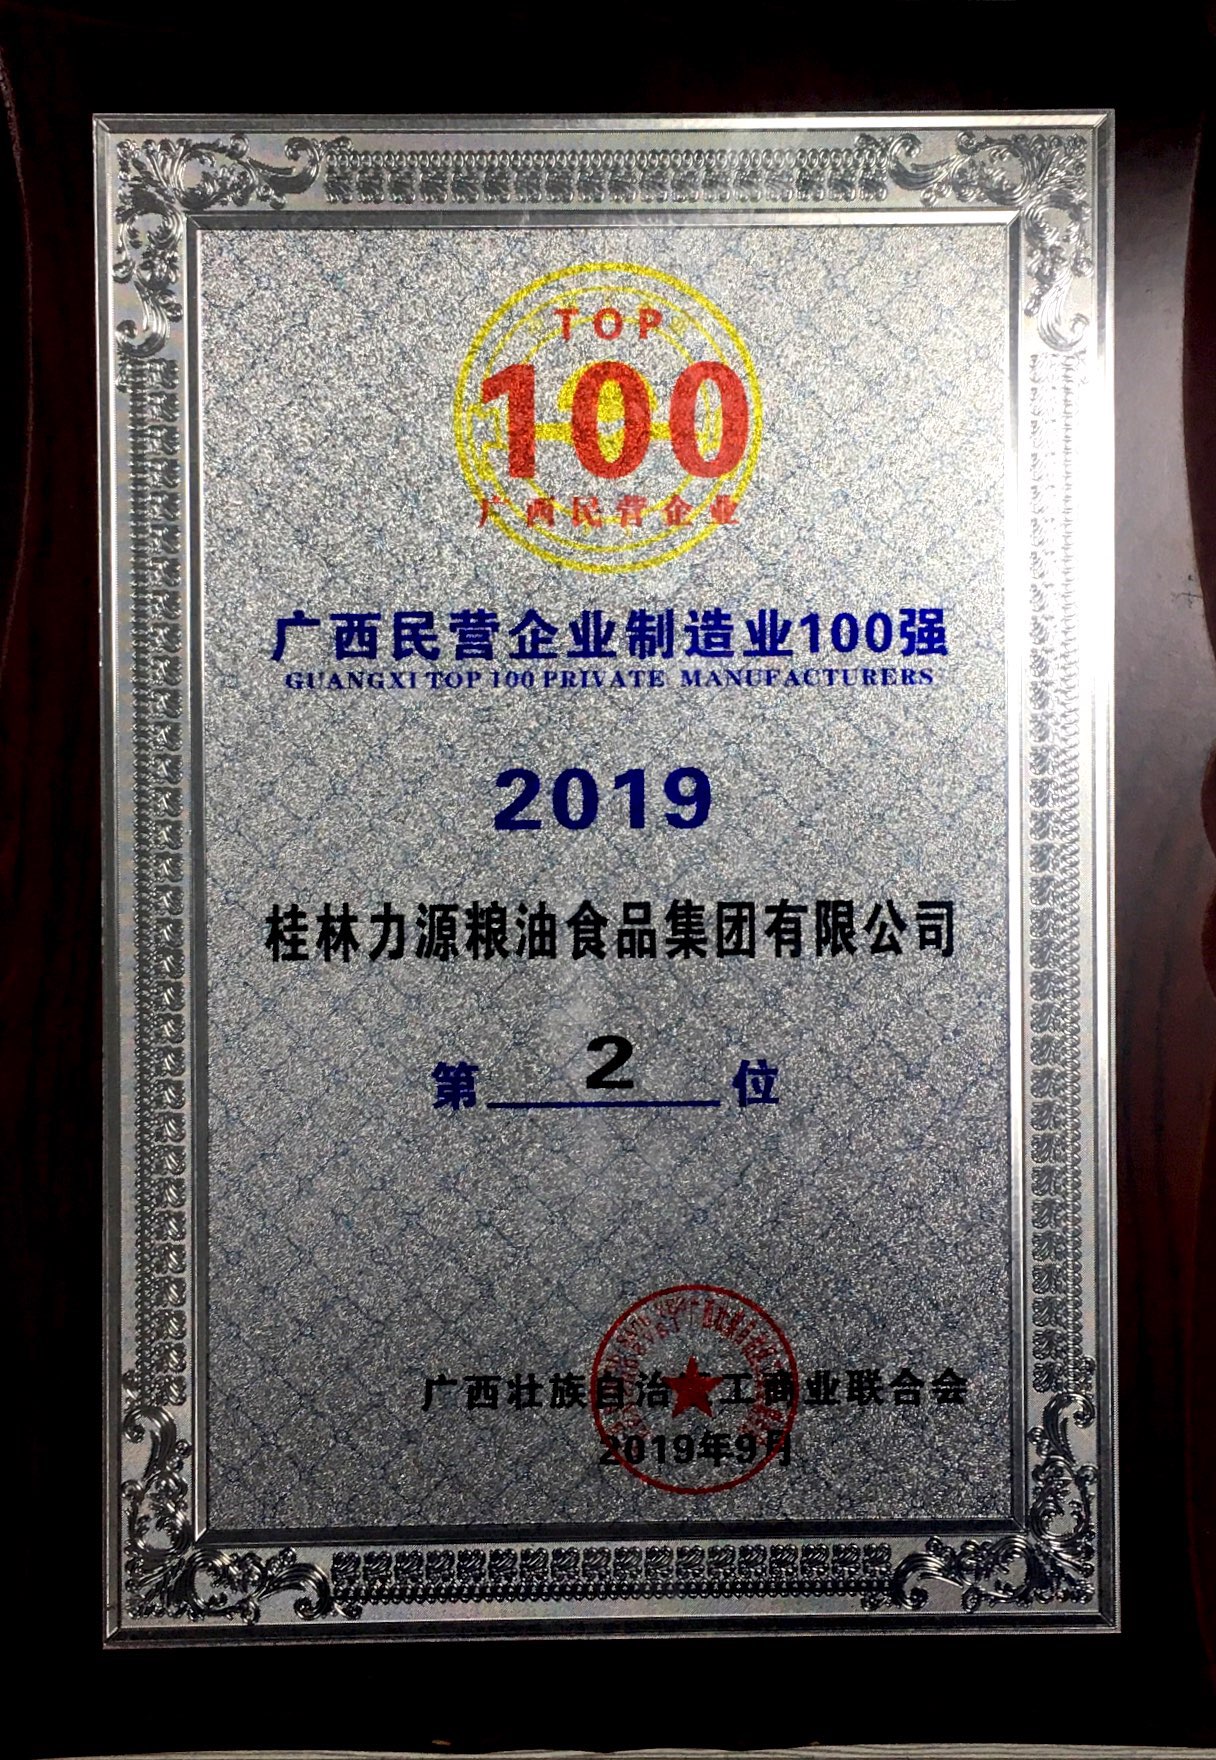 2019年廣西民營企業制造業100強第二名